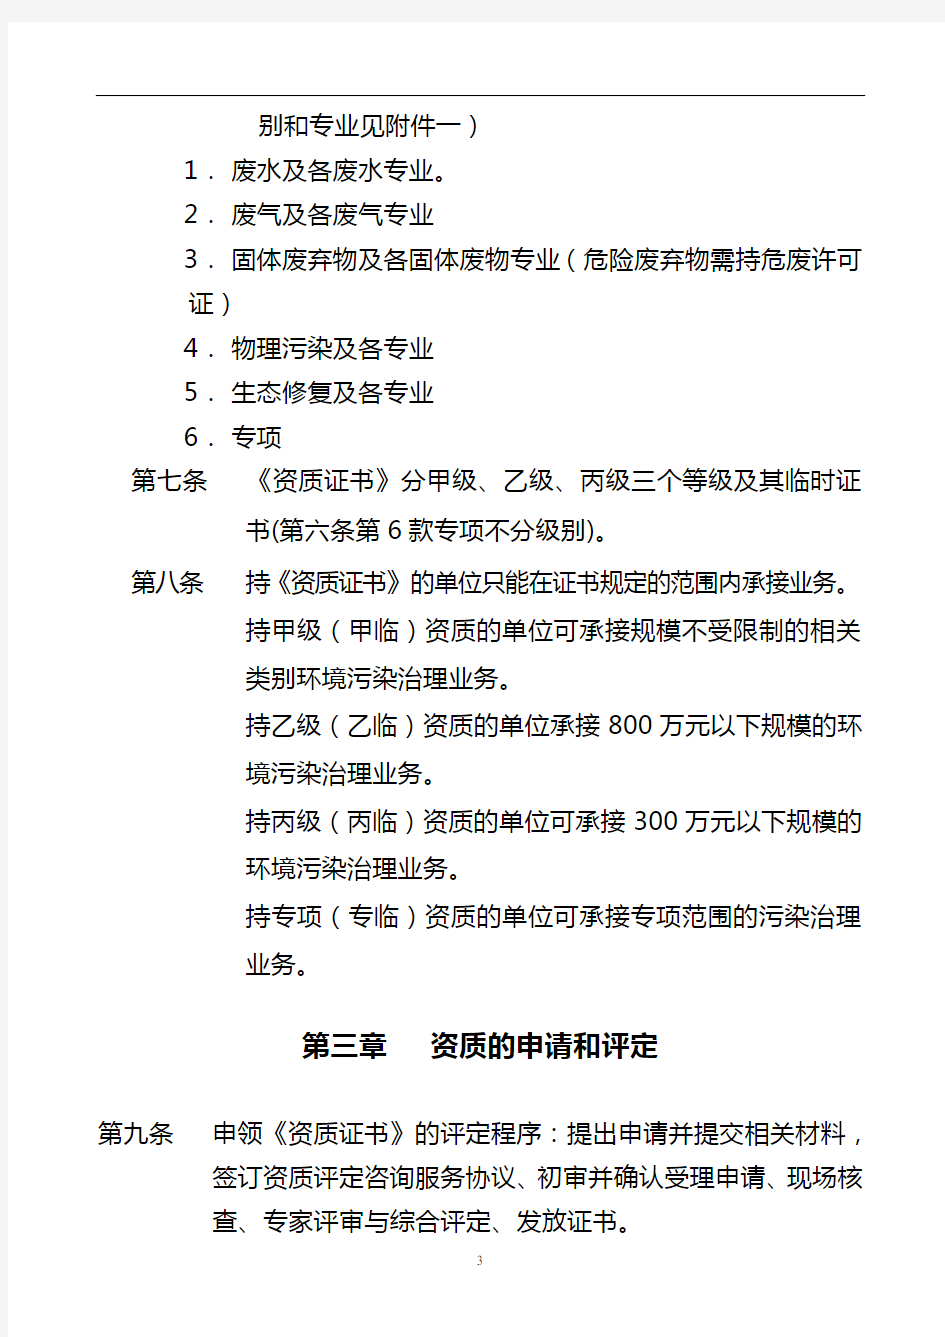 重庆市环境污染治理资质评定管理办法(最新)讲解